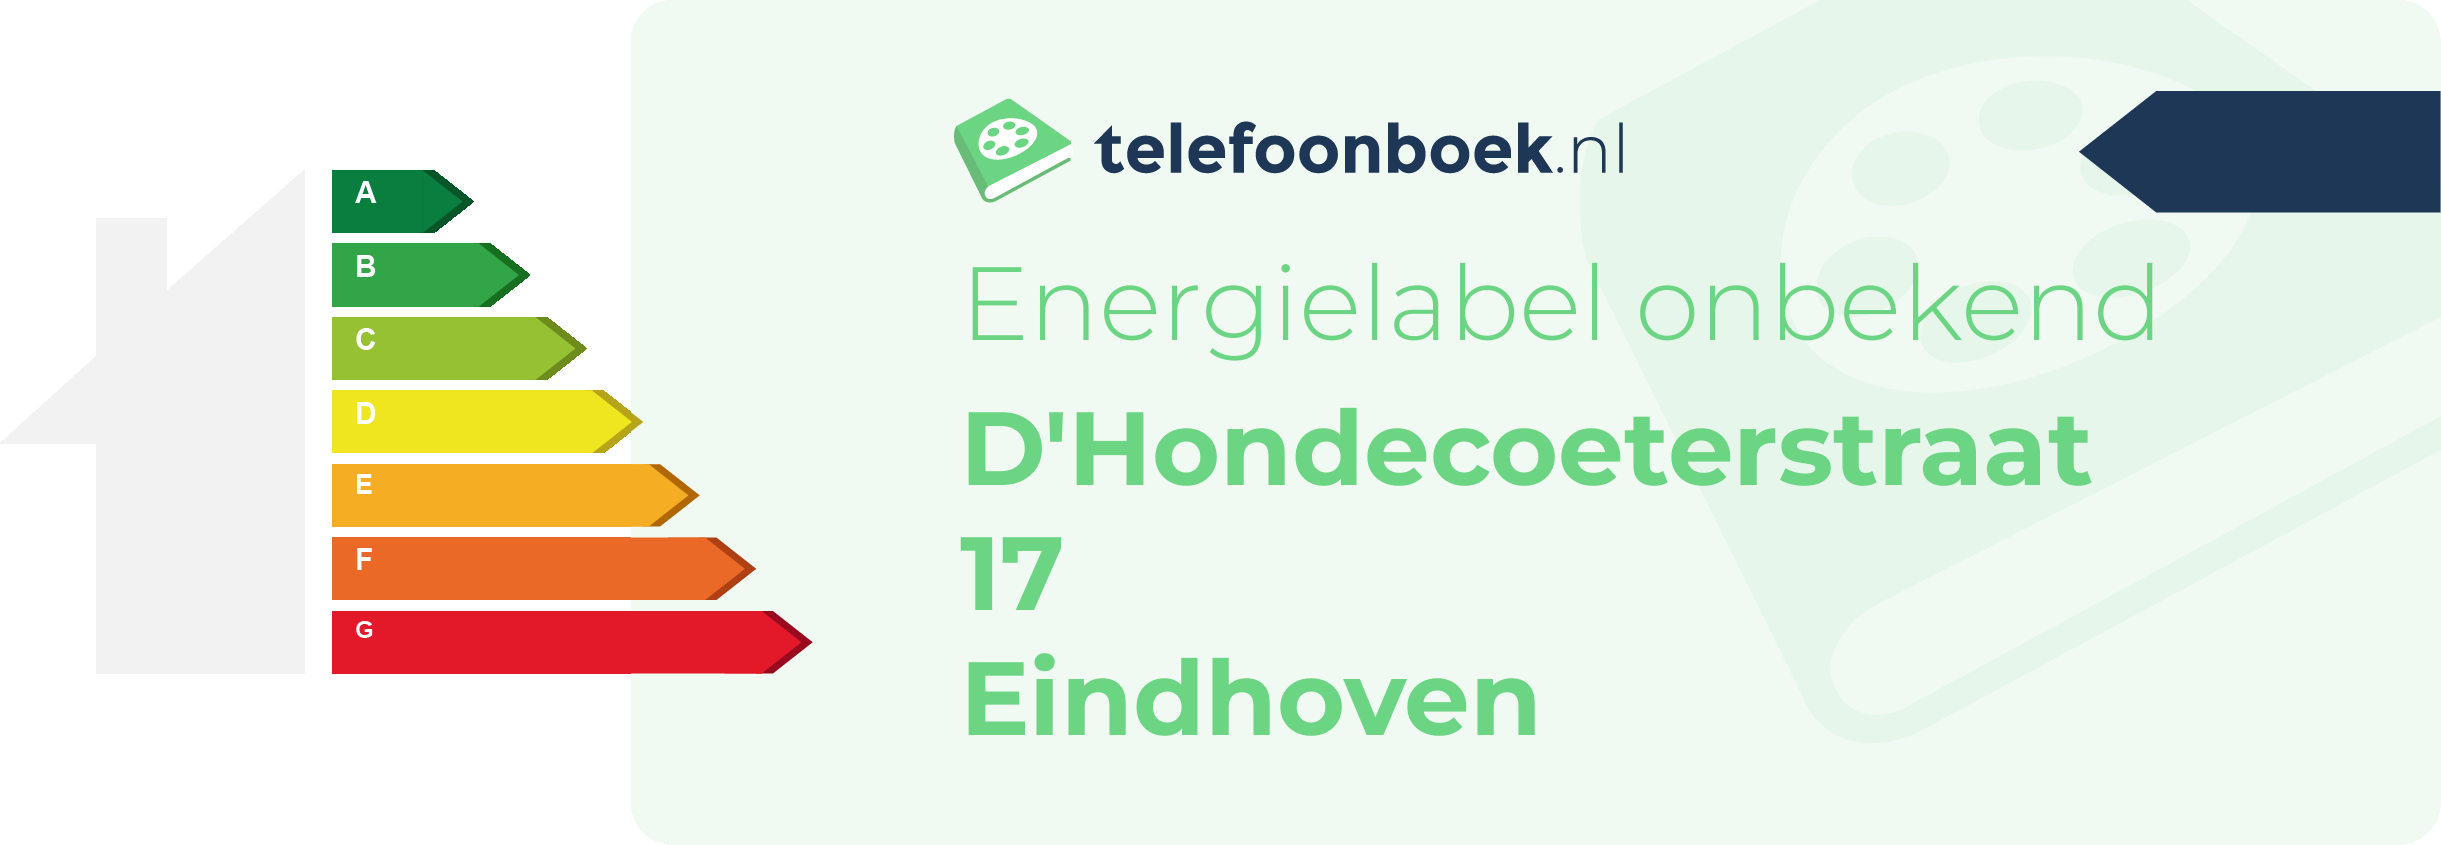 Energielabel D'Hondecoeterstraat 17 Eindhoven